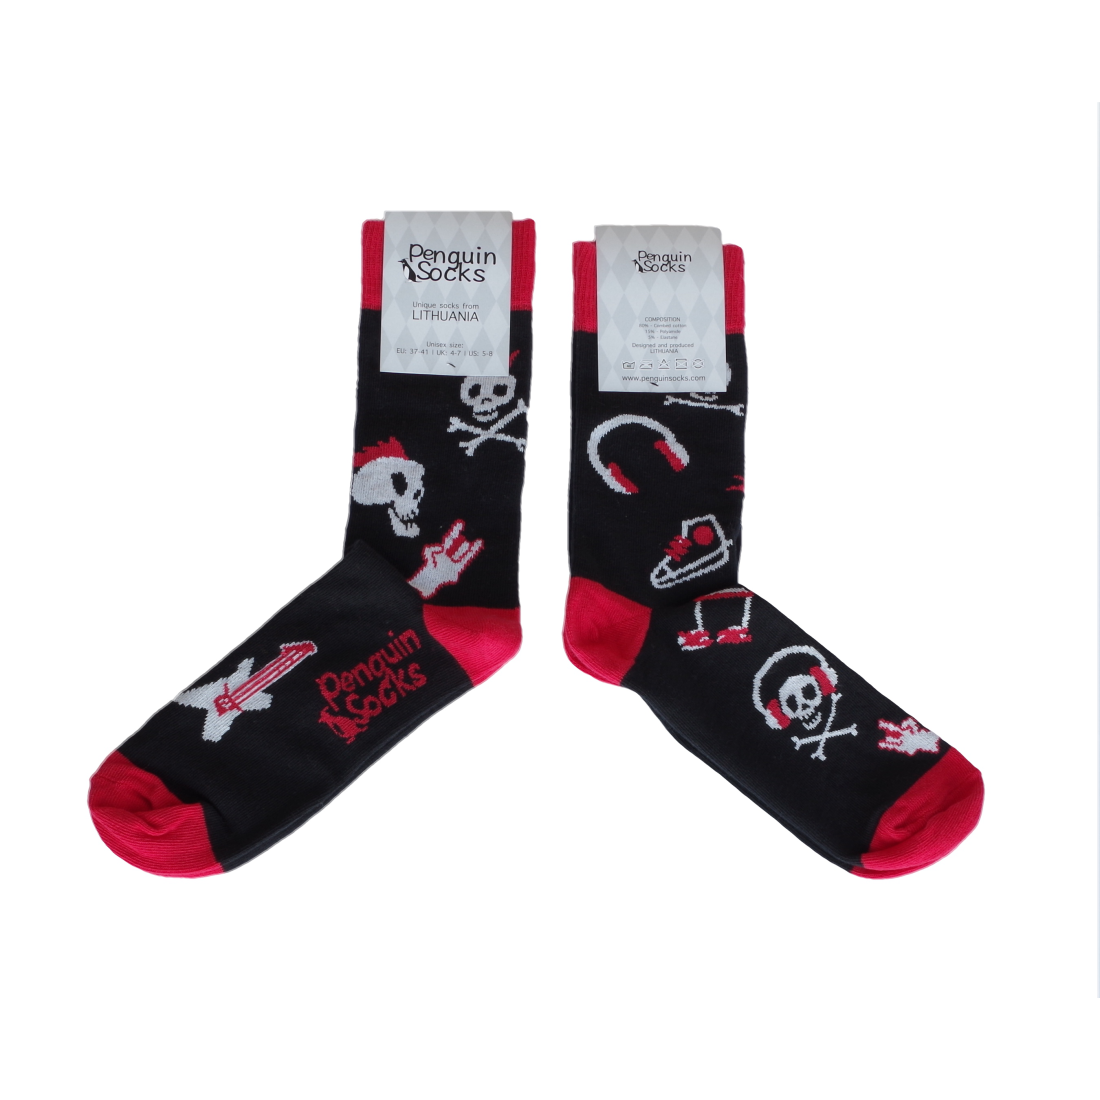 Punk Rock kojinės - Linksmos kojinės (Penguin socks)